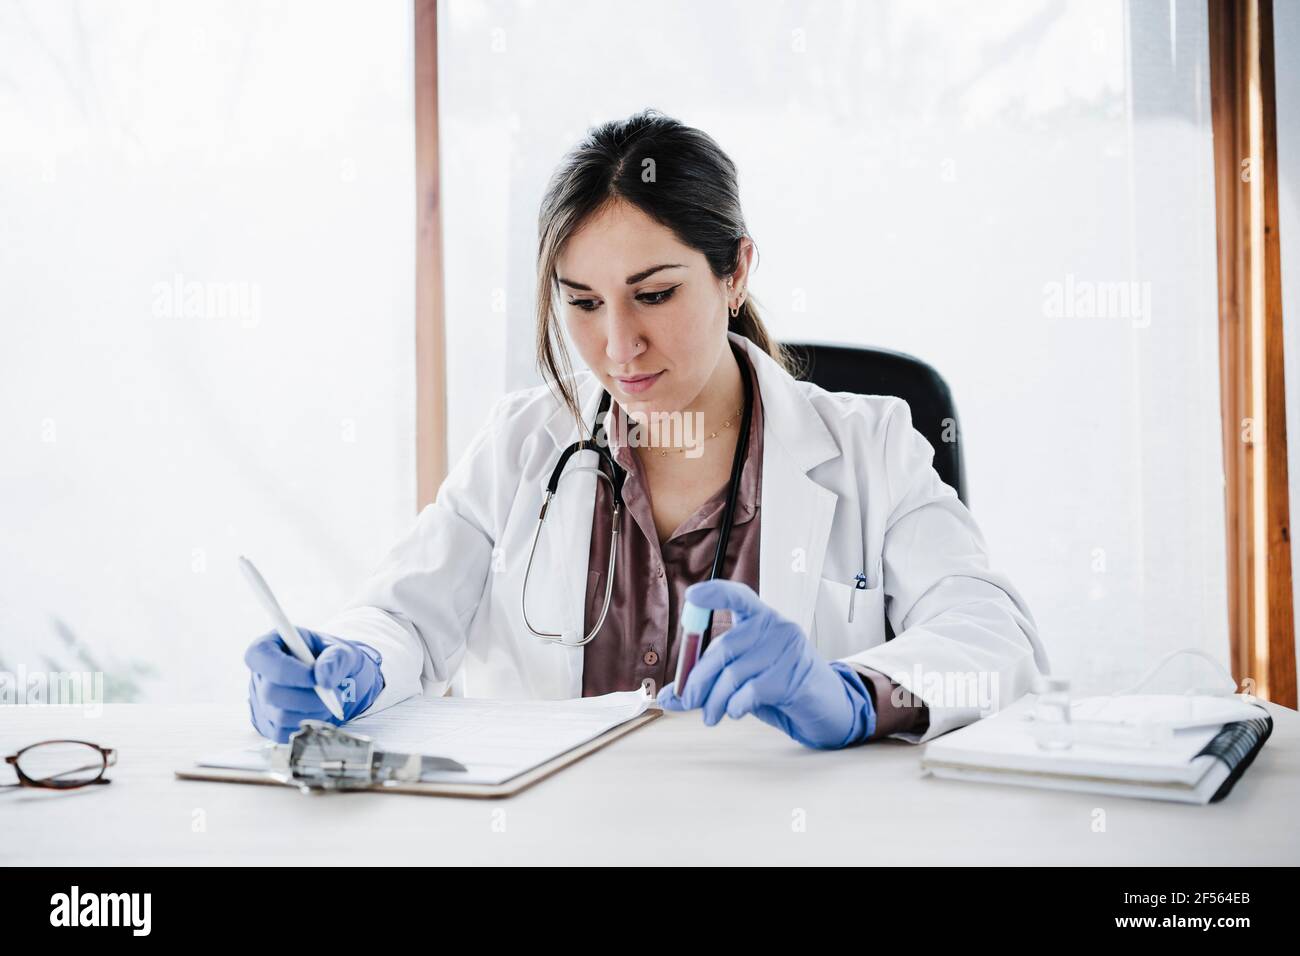 Weibliche medizinische Expertise beim Schreiben von Bluttestberichten während der Blutkonserven Probe am Schreibtisch Stockfoto